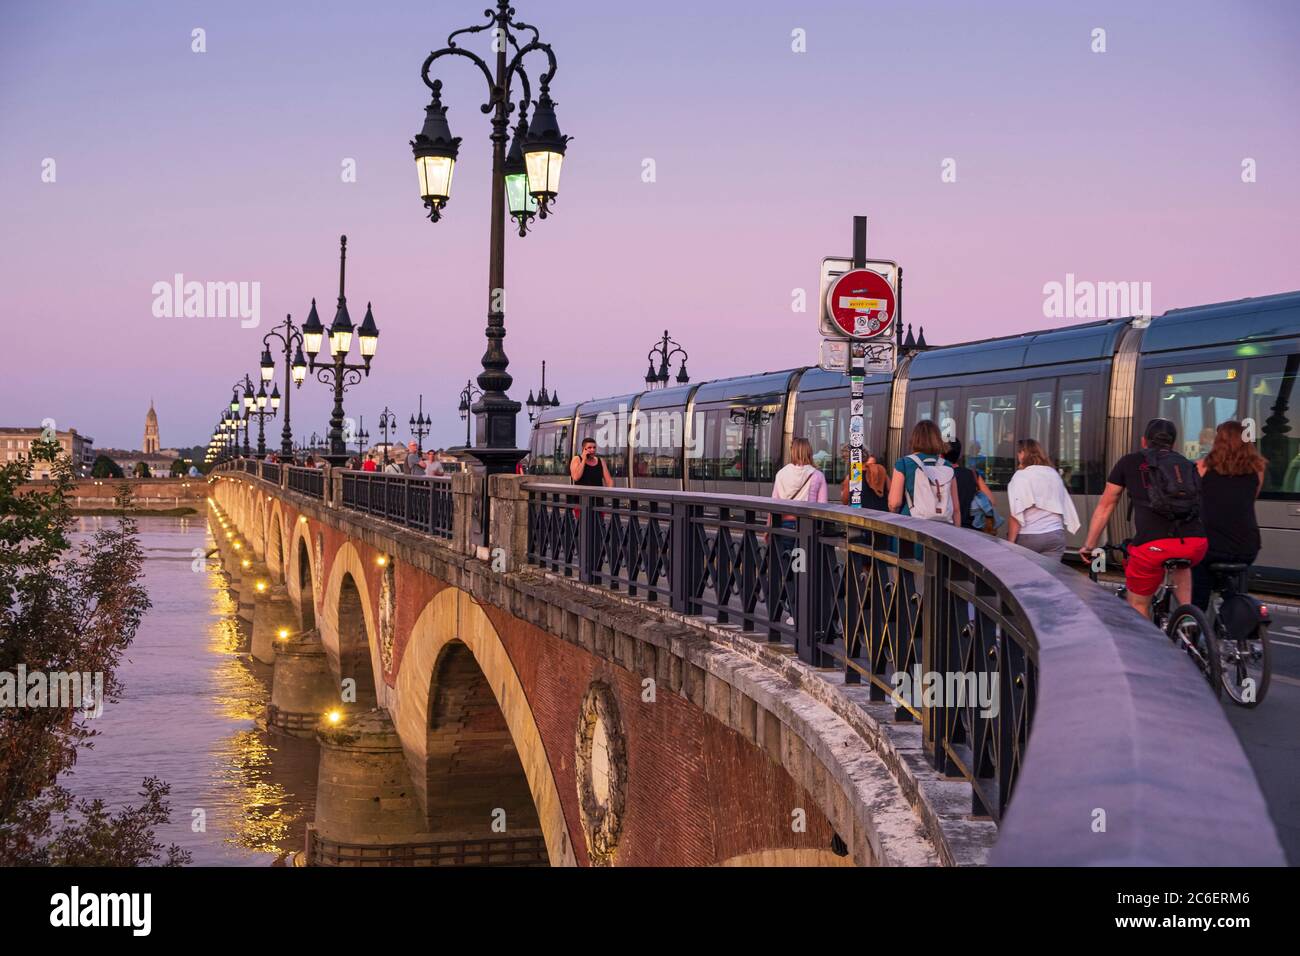 Pont de Pierre on the Garonne river with tram, Bordeaux City, France Stock Photo